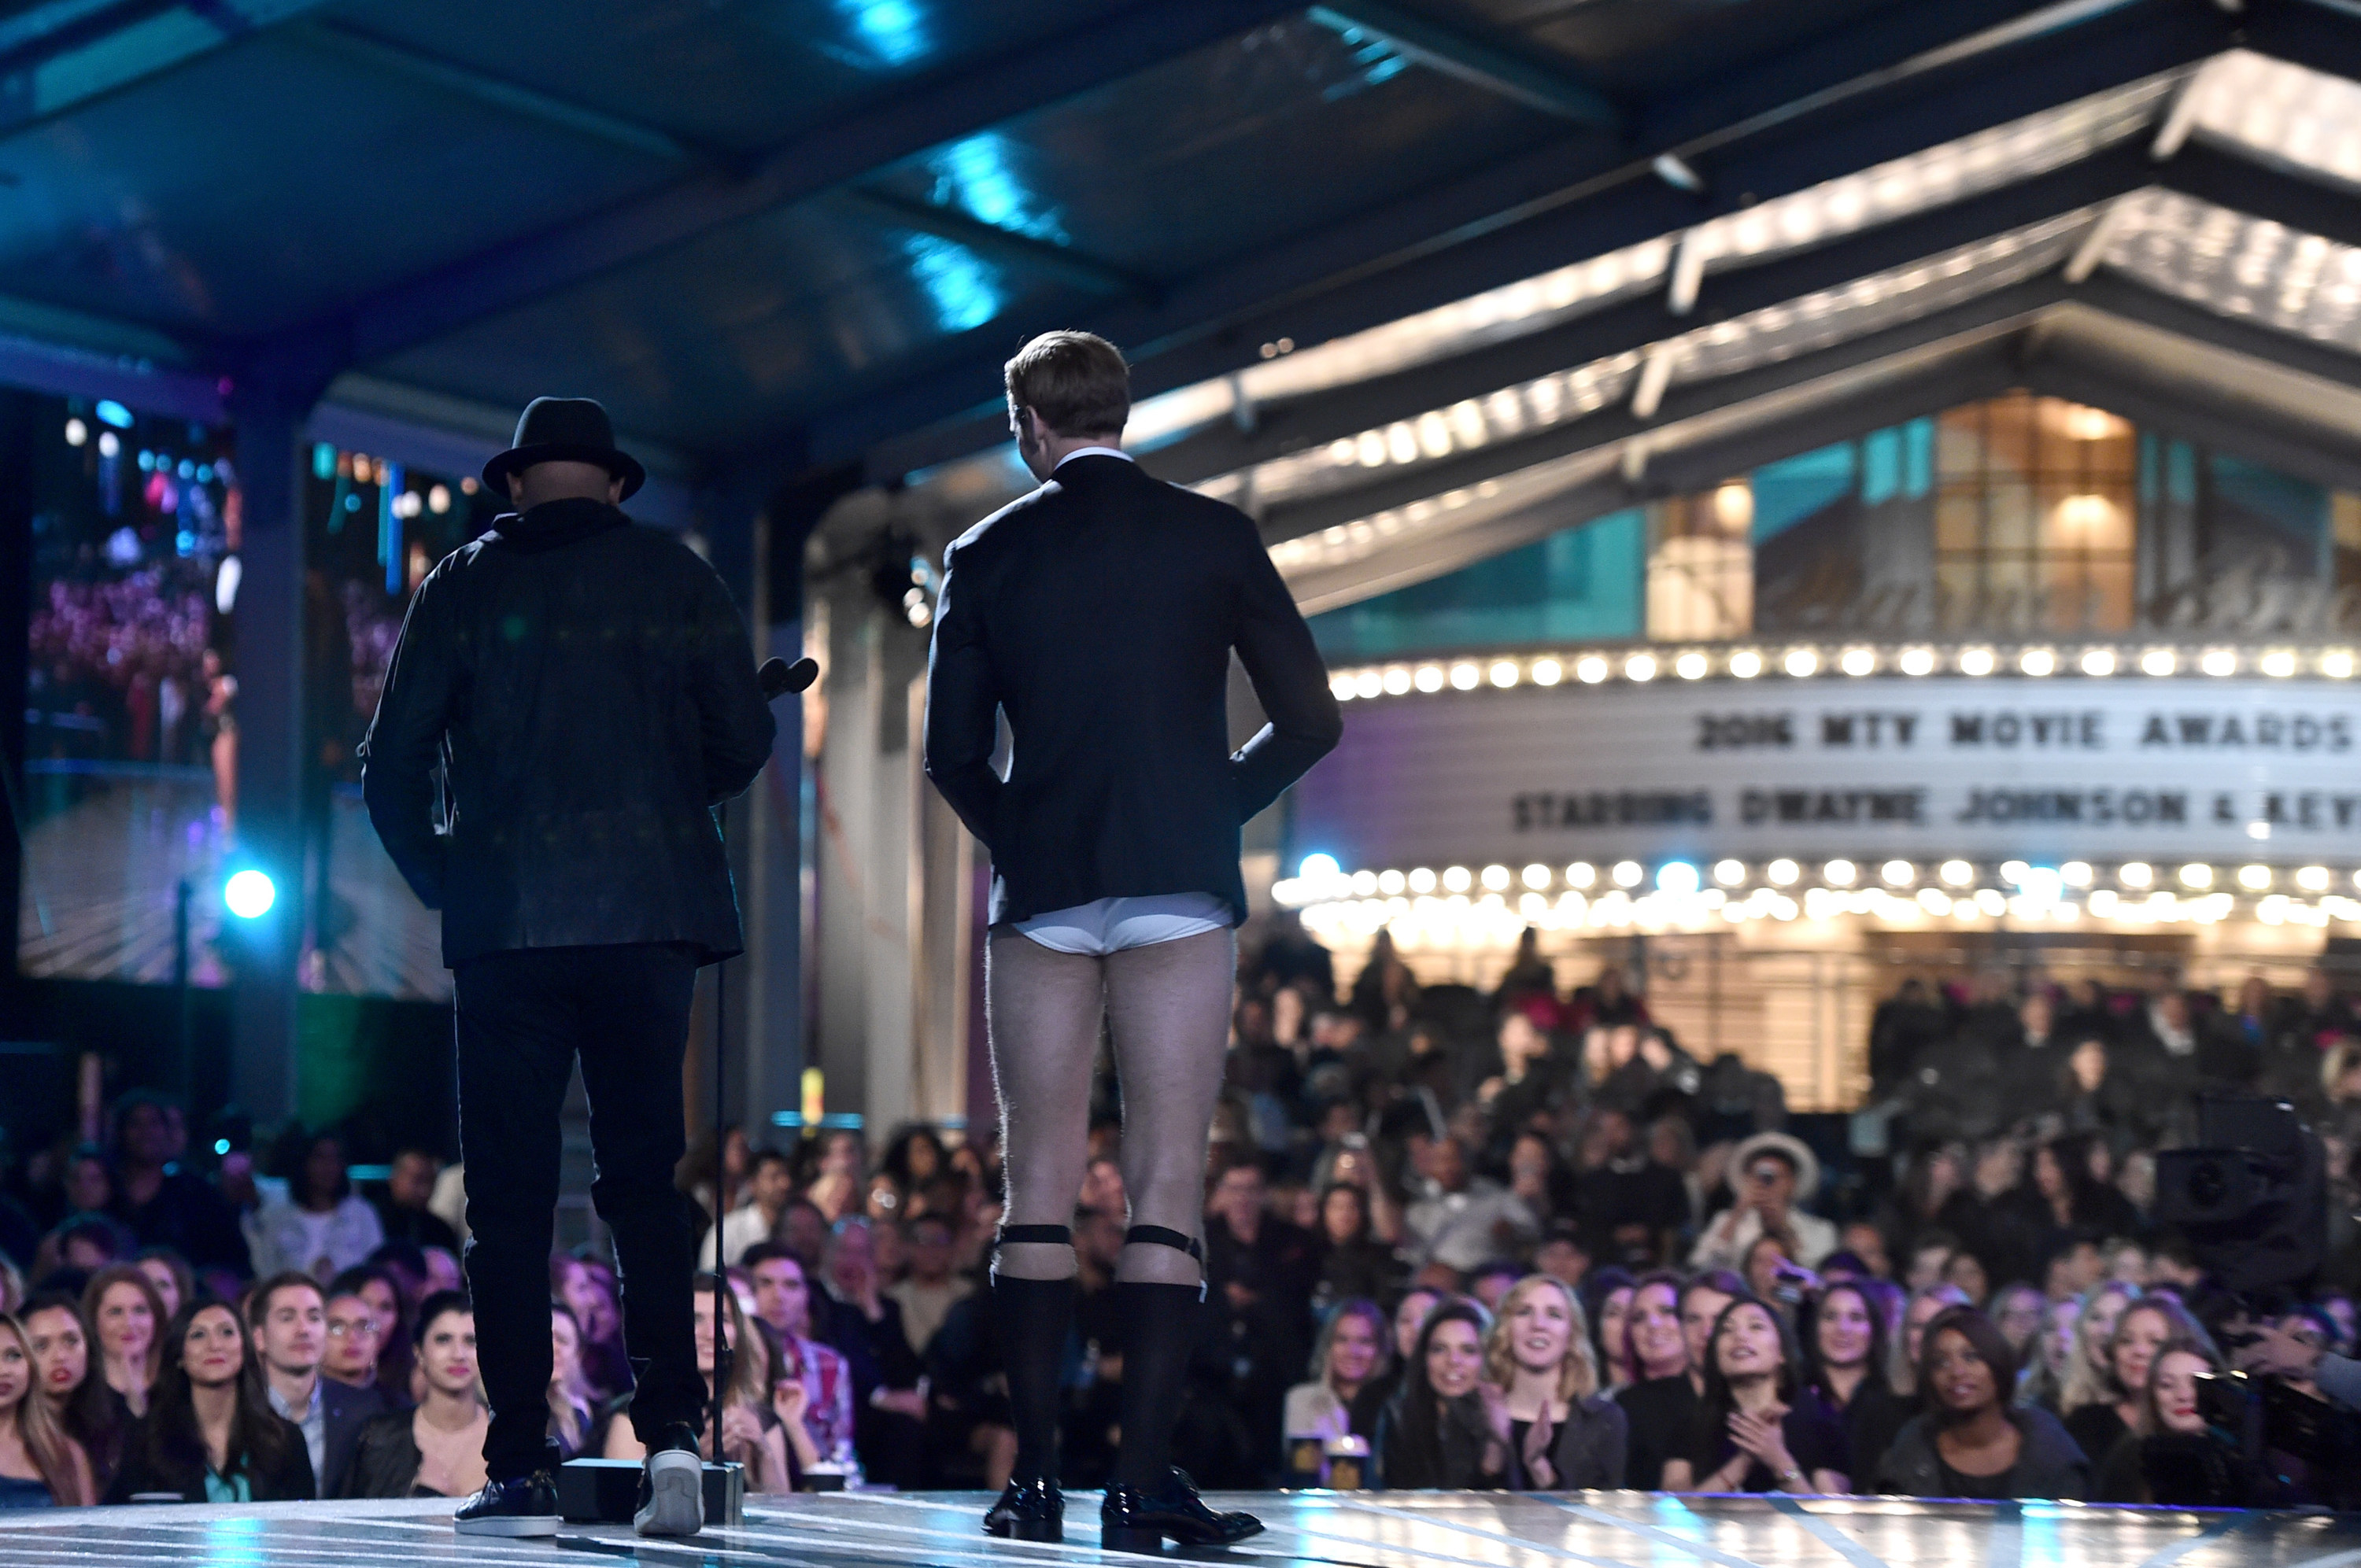 Alexander stands onstage next to Samuel